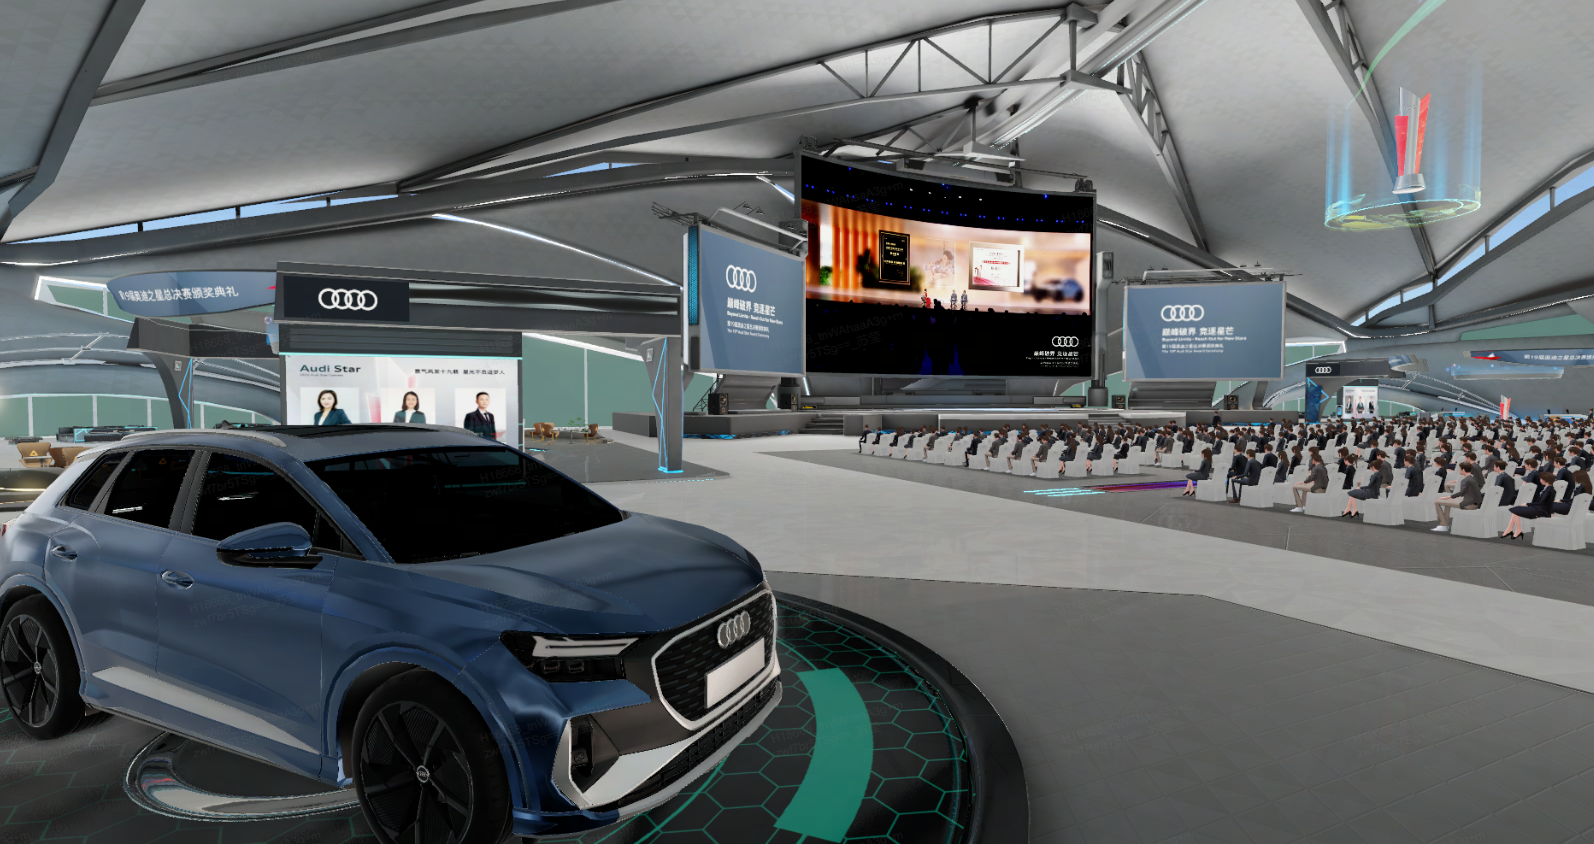 这是一张展示会场的图片，中间停着一辆蓝色奥迪汽车，背景是大屏幕和观众席，环境现代科技感强。